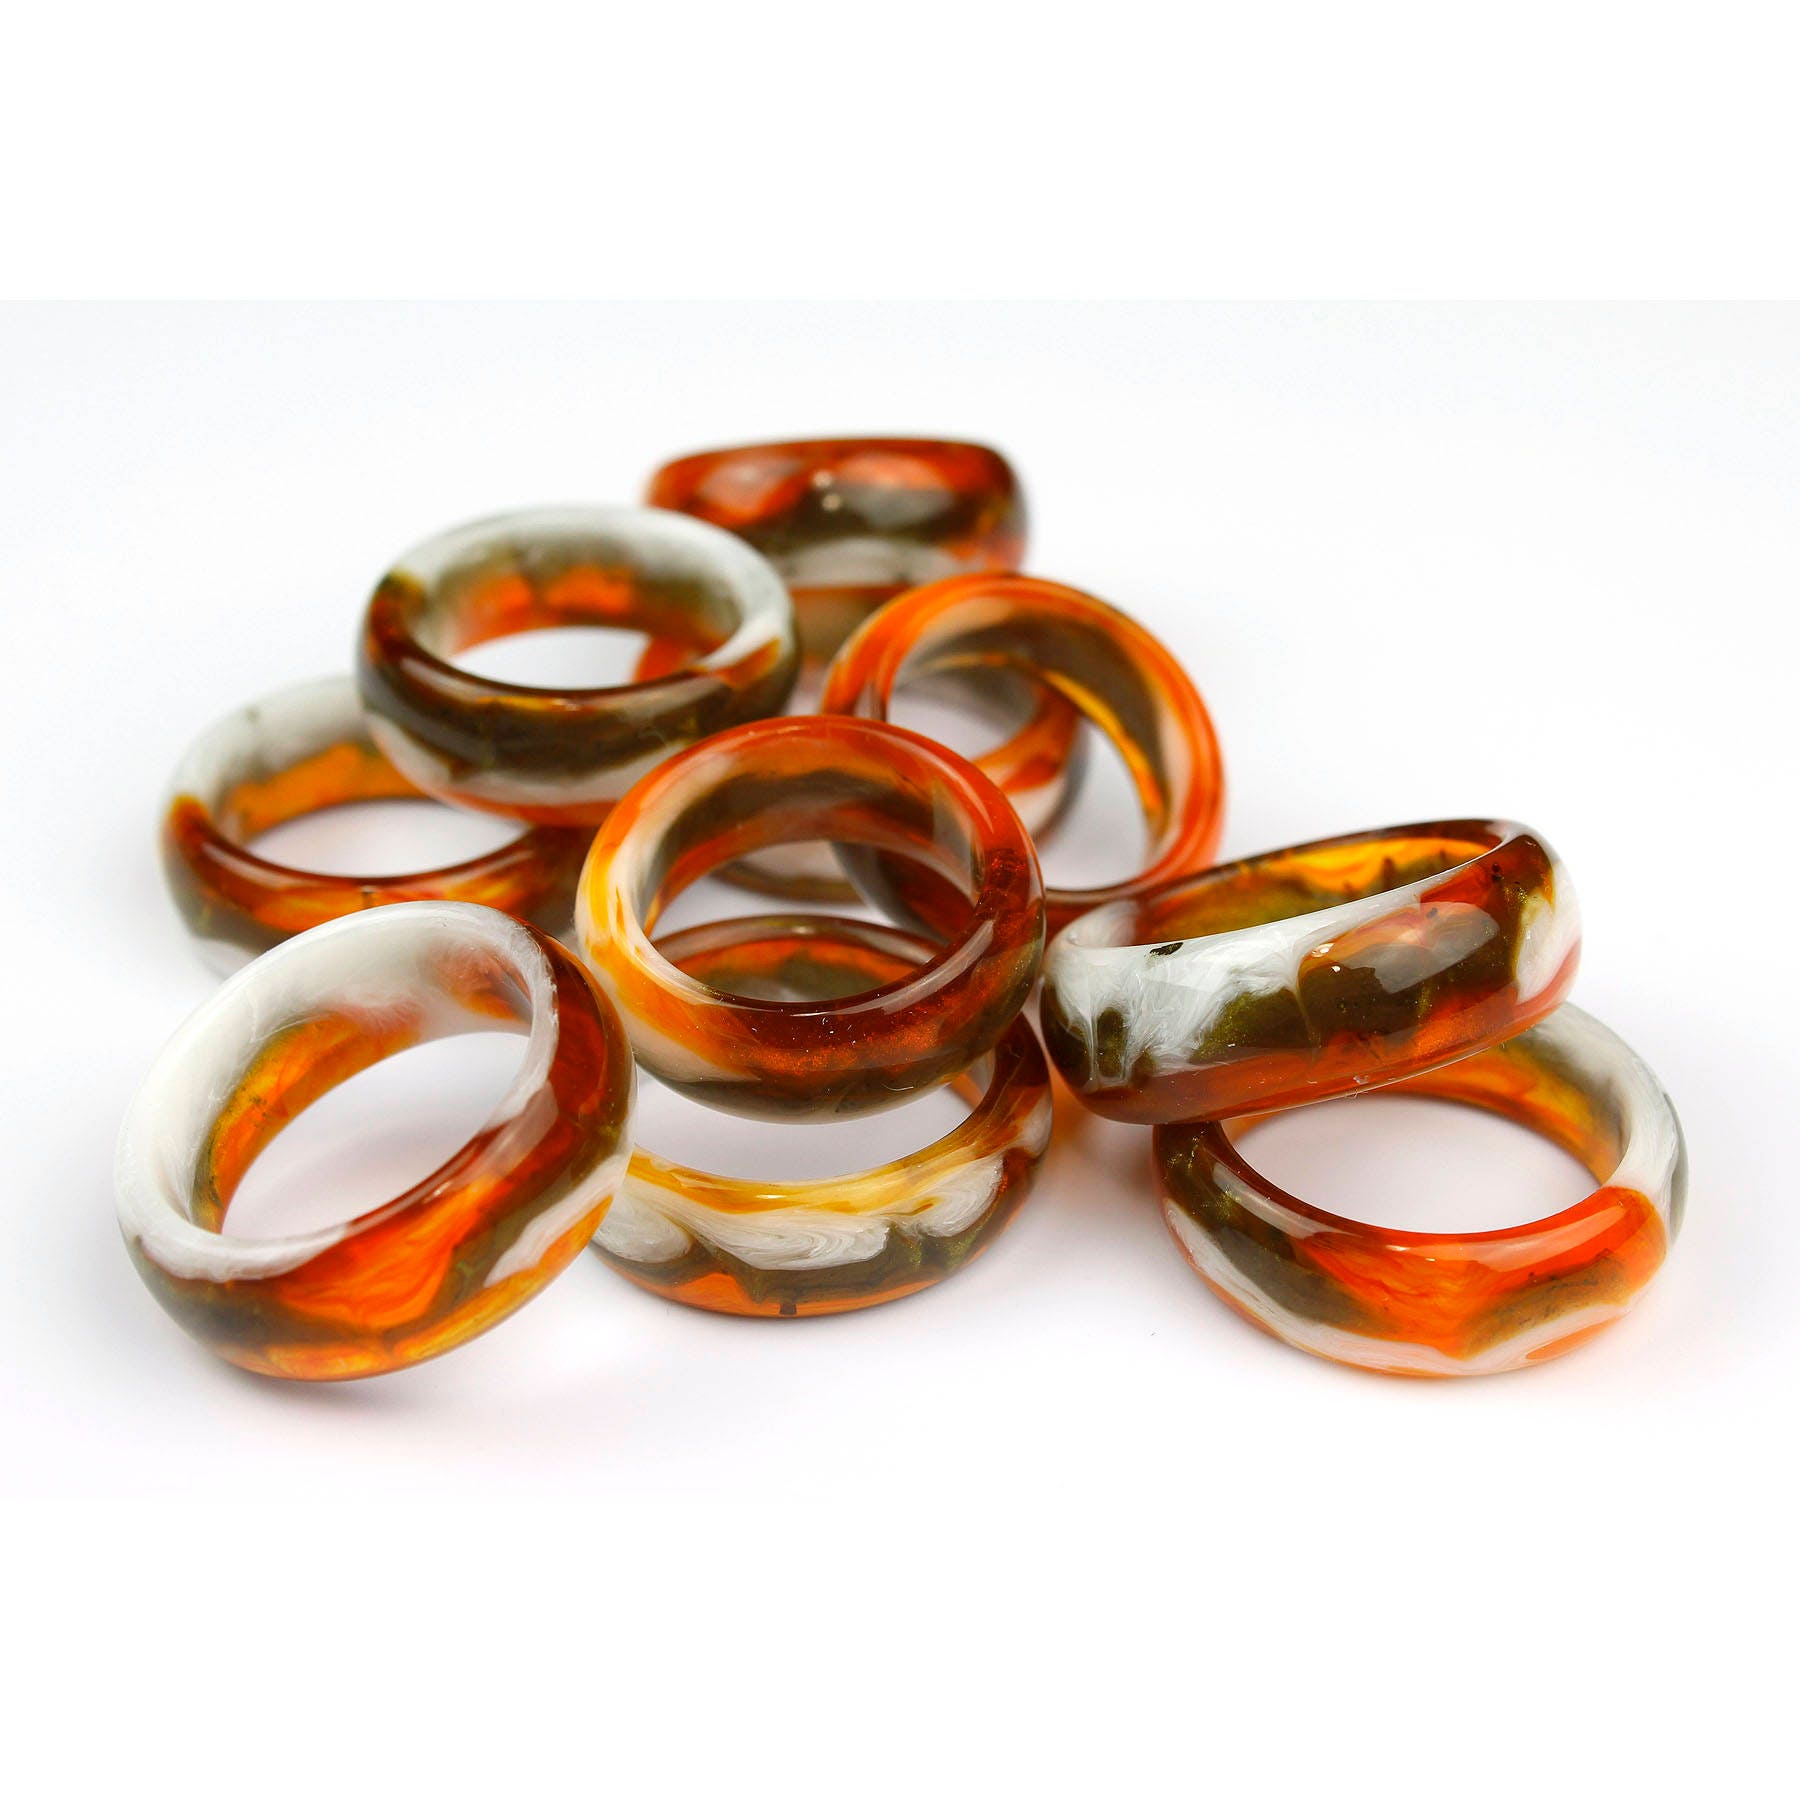 Jupiter storm resin ring handmade turned rings orange and